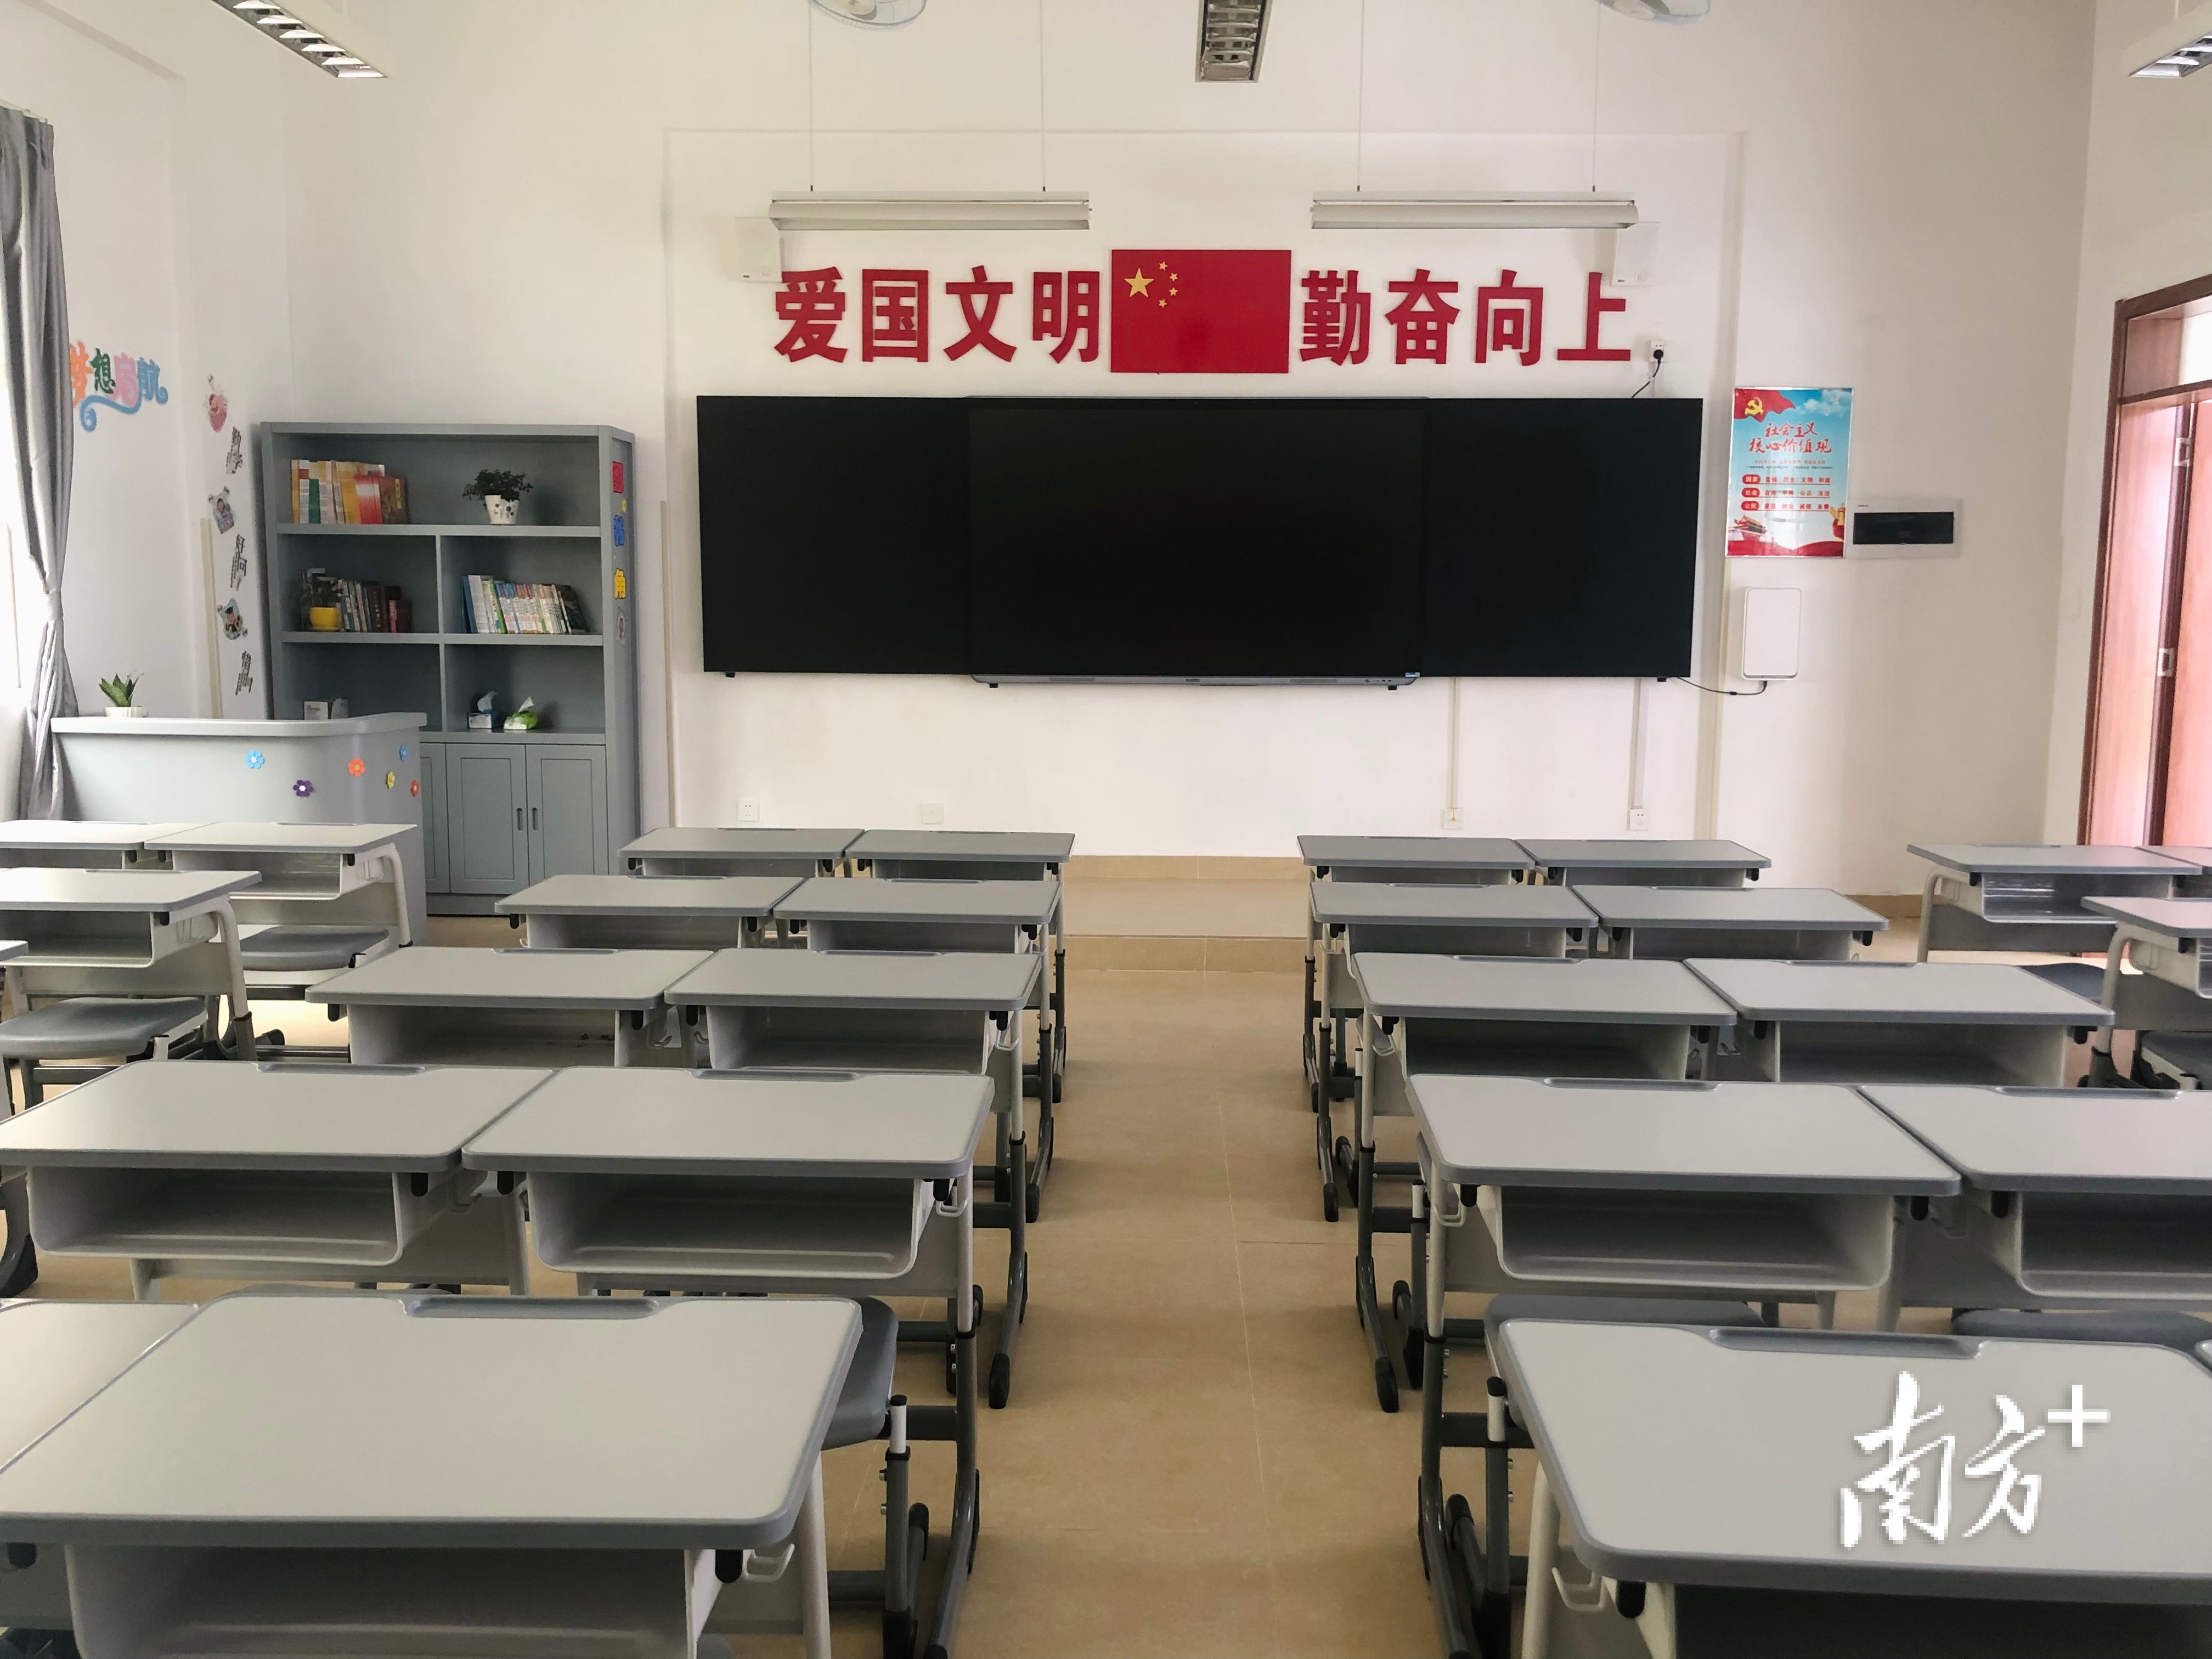 绵德小学新校区按48个教学班办学规模建设。黄敏璇 摄